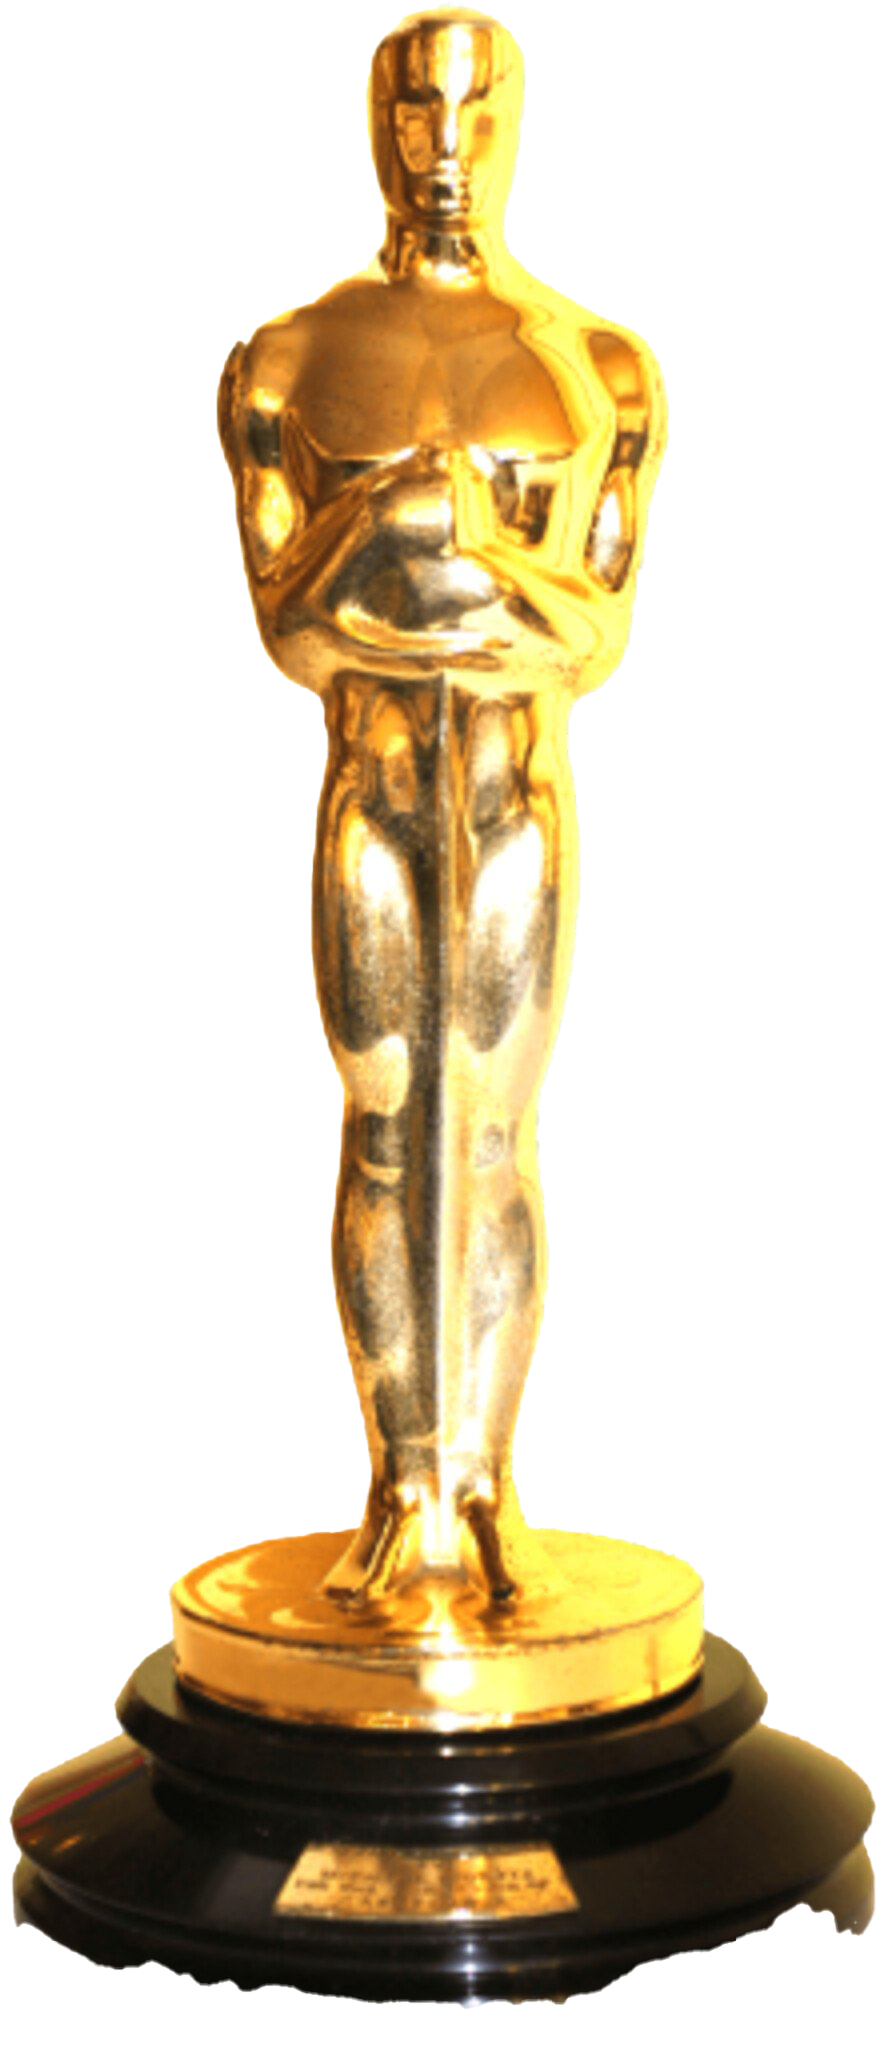 Oscar Academy Awards PNG Transparent Image